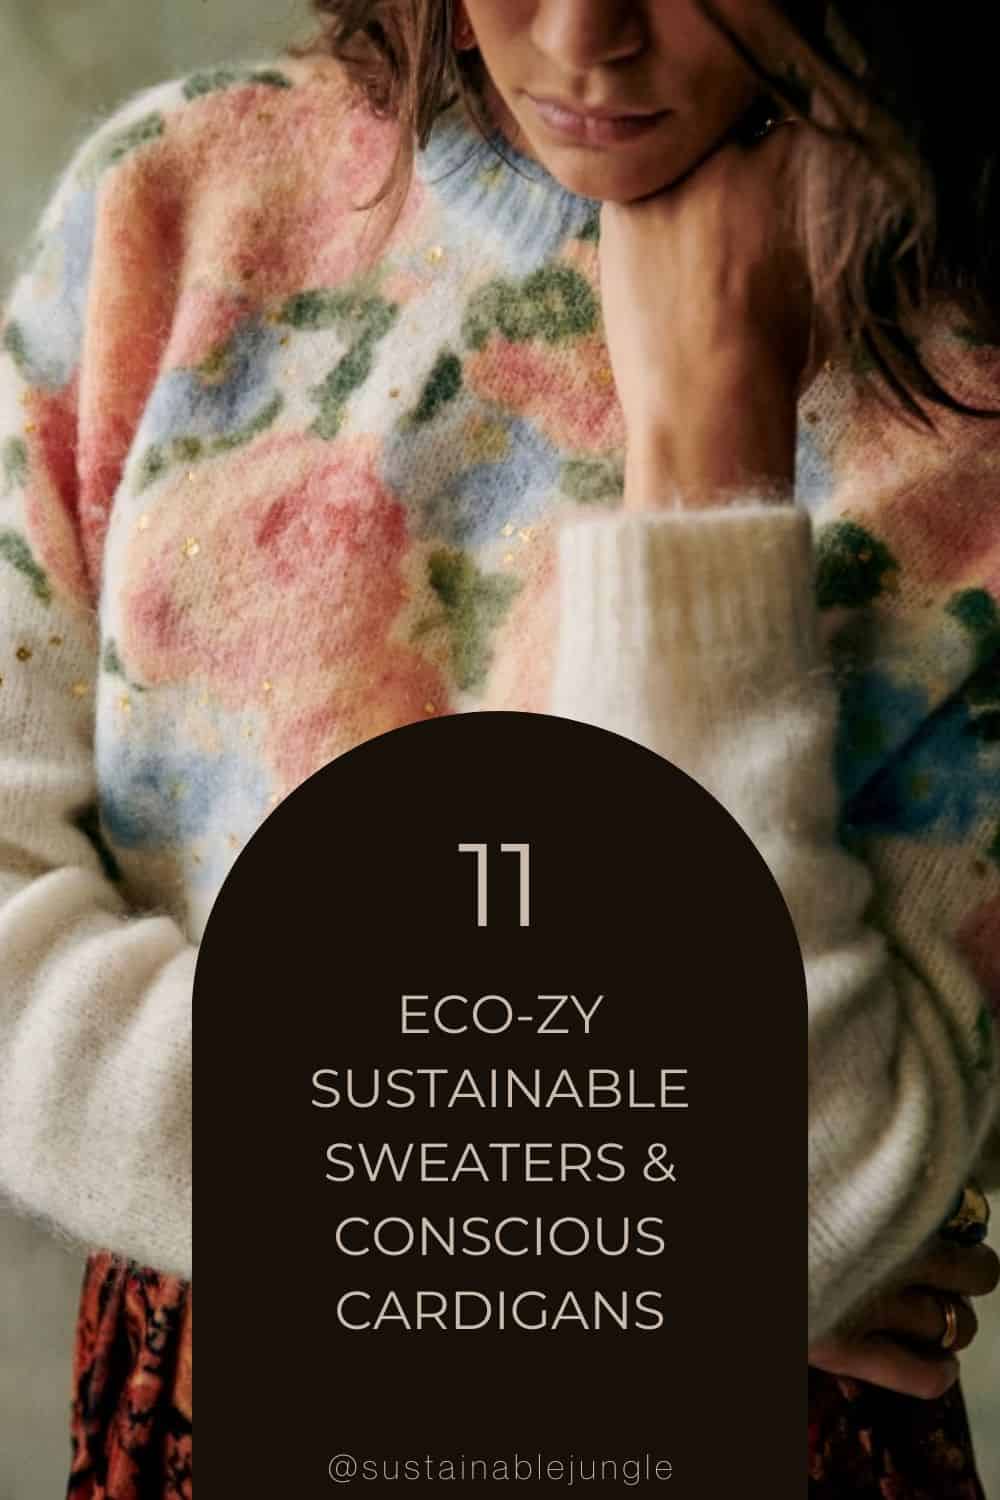 图片来自Sézane #可持续的天气#可持续的天气#可持续的羊毛衫#可持续的羊毛衫#道德的羊毛衫#生态友好的天气#可持续的丛林